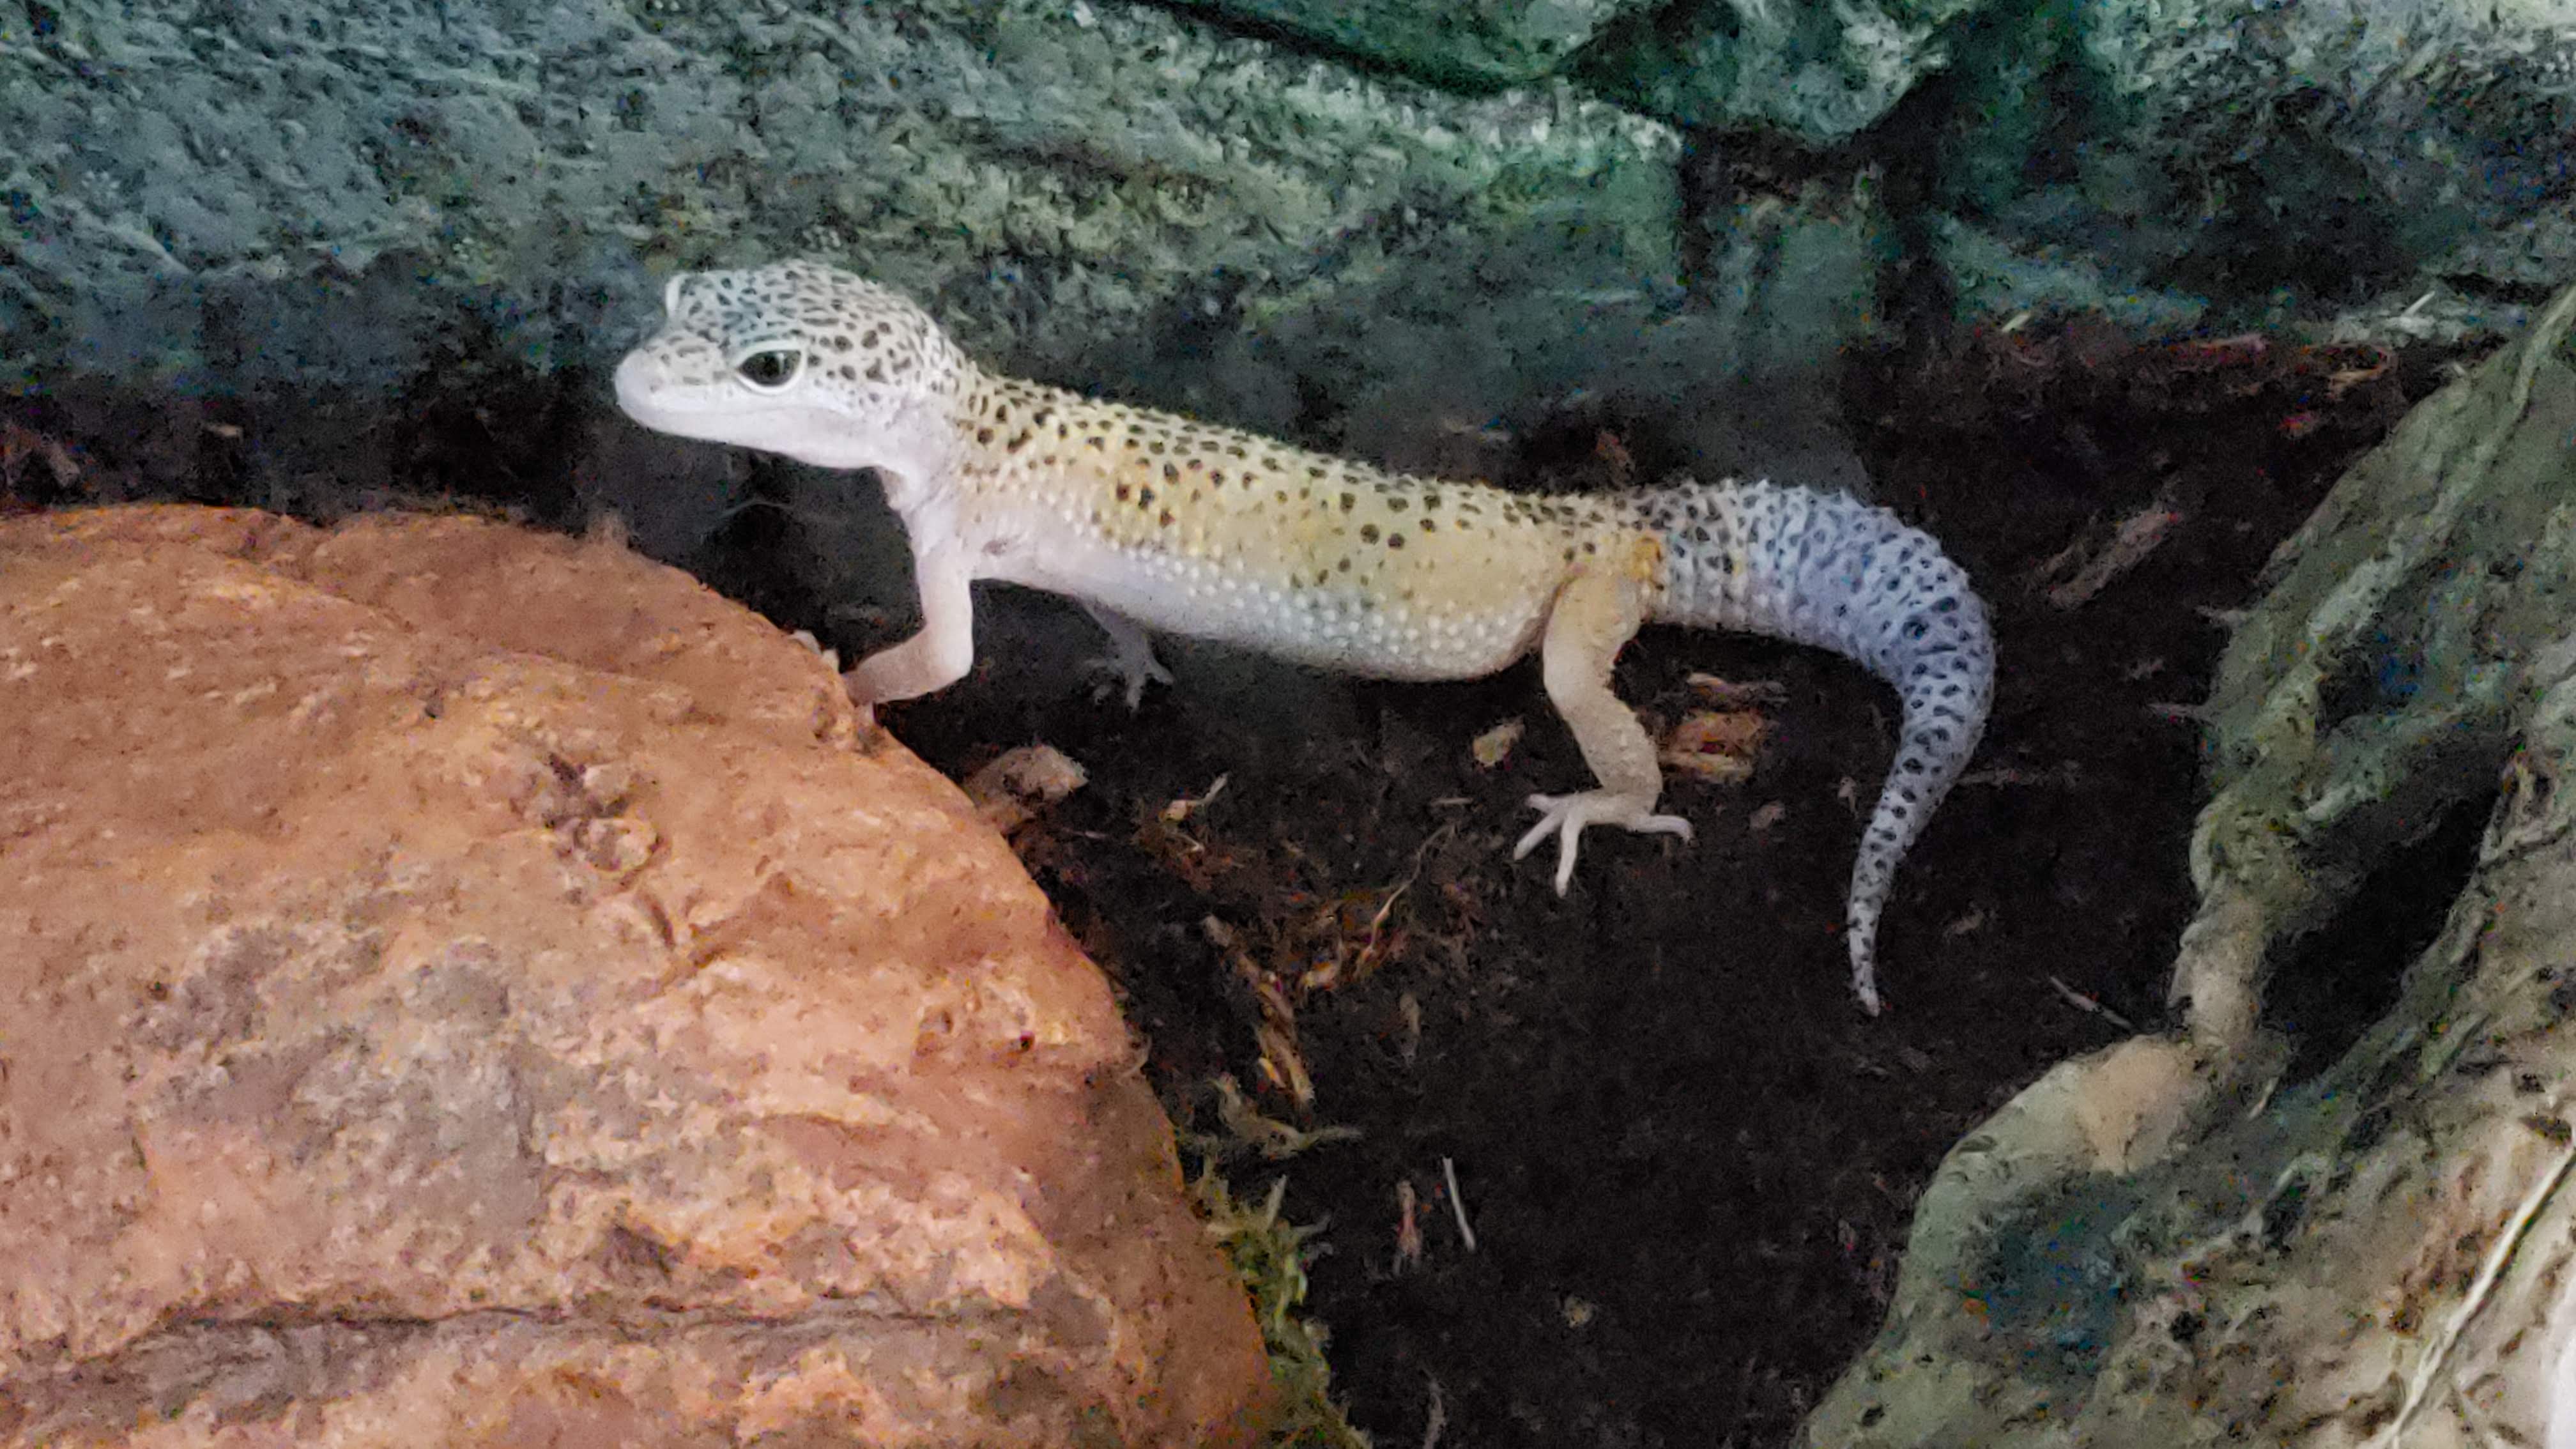 Chomper - Male 4.5 M/O - Leopard Gecko